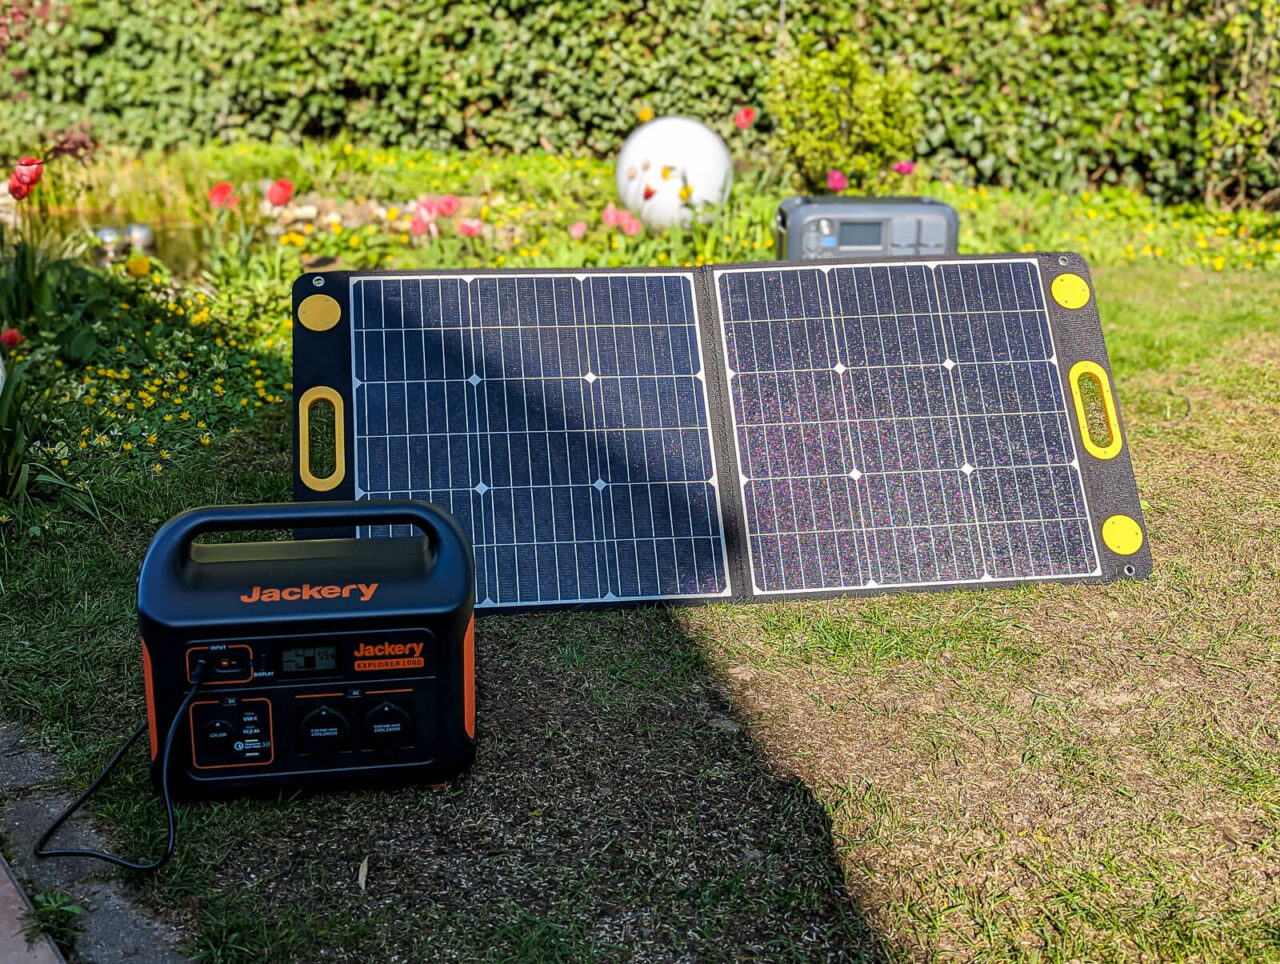 Togo Power 100w Advance Solar Panel Test, Leistung Im Halbschatten, 25% Teilabschattung, Mit Solargenerator Jackery Explorer 500